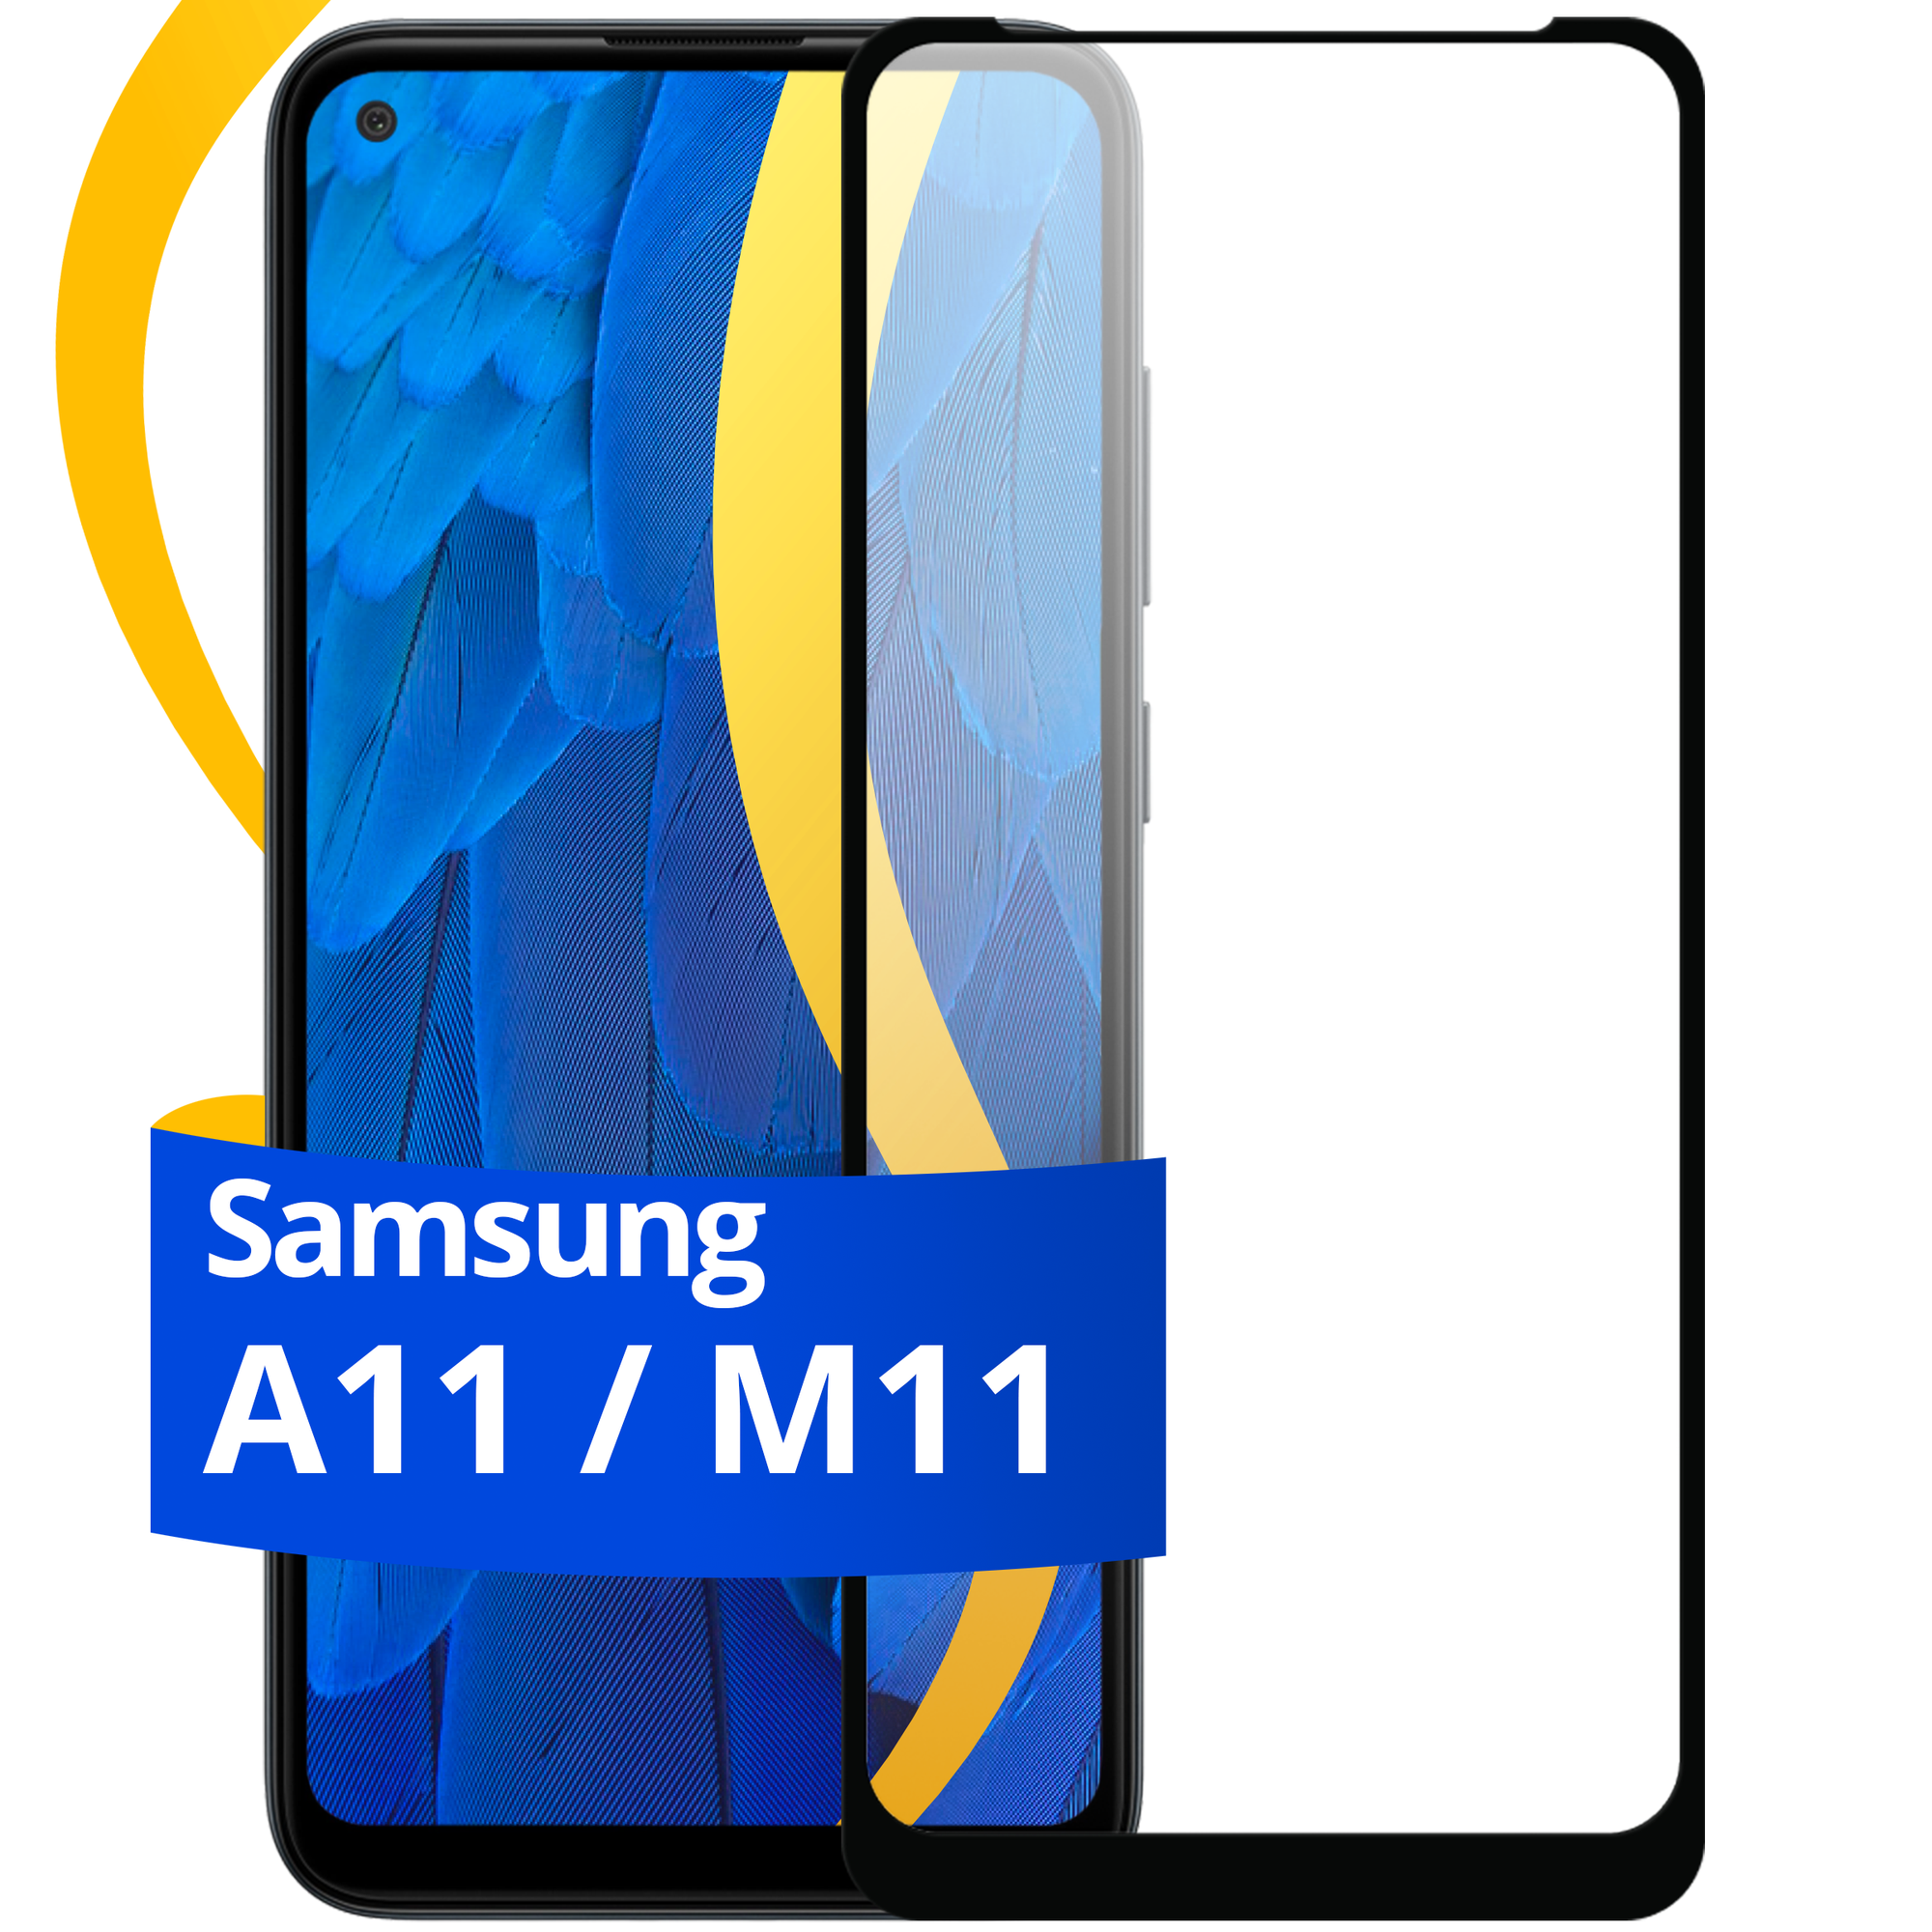 Комплект 3 шт защитное стекло для телефона Samsung Galaxy A11 и M11 / Набор противоударных стекол на смартфон Самсунг Галакси А11 и М11